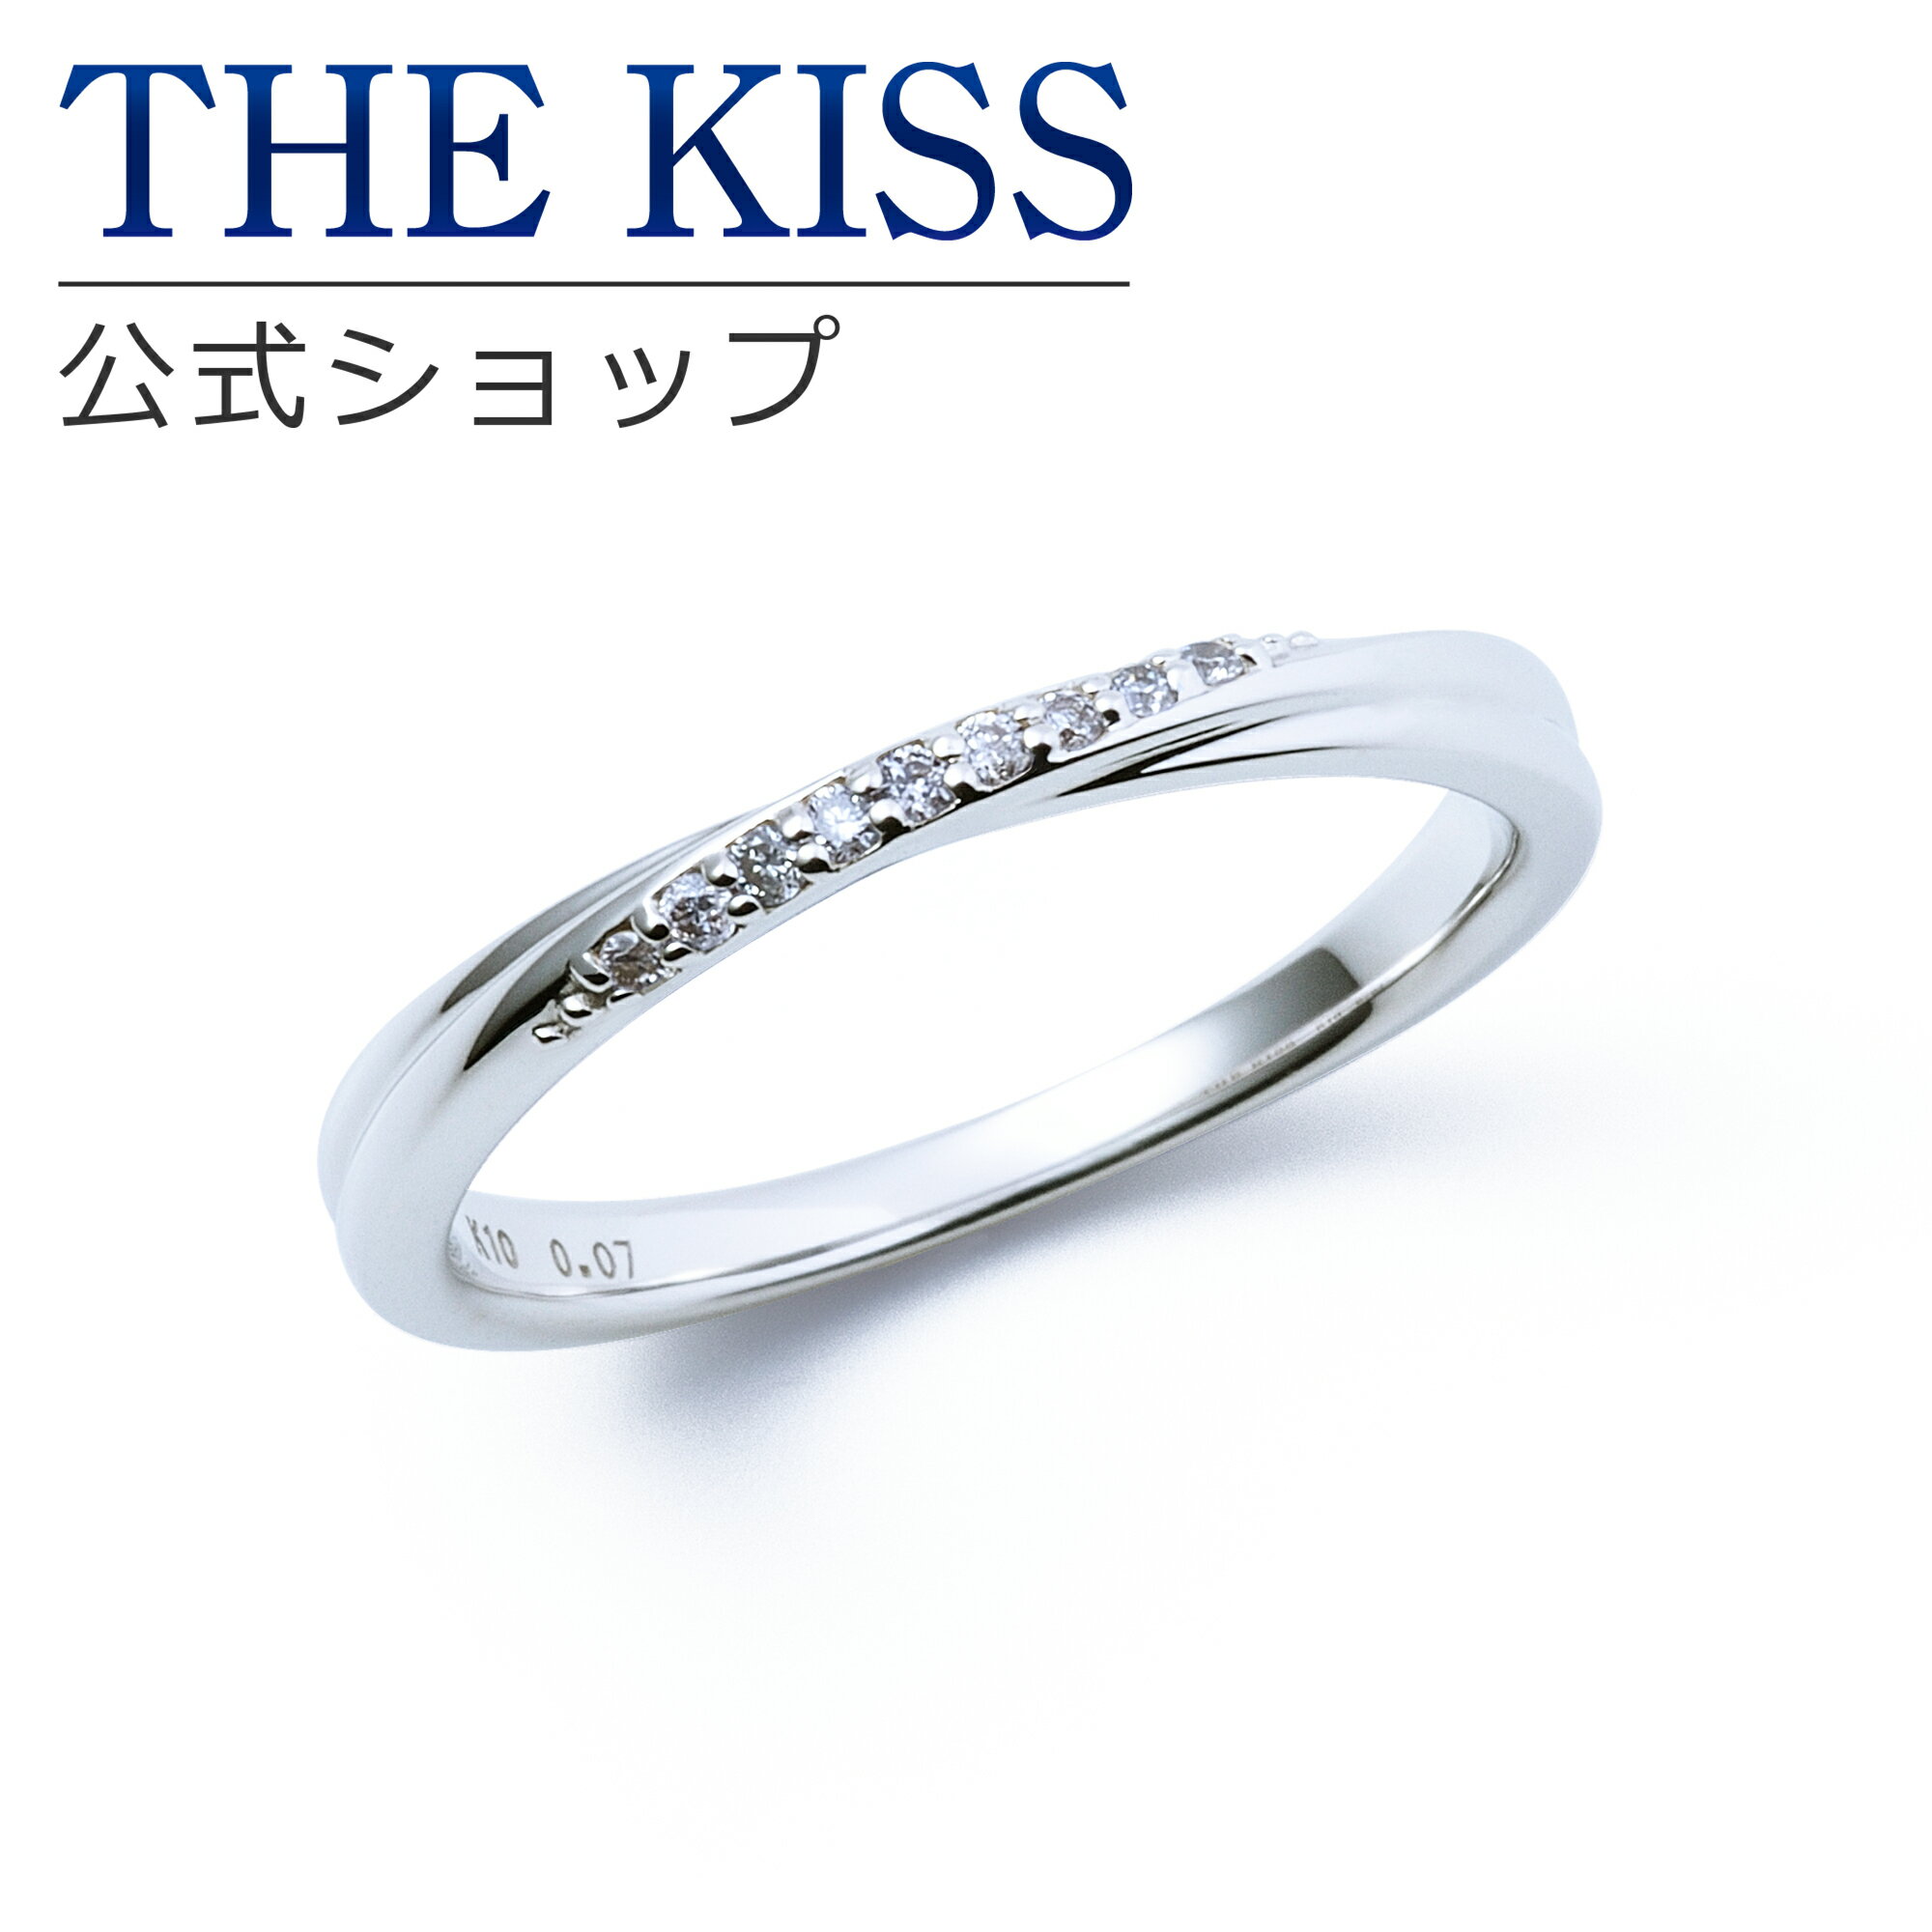 【ラッピング無料】【刻印無料】【THE KISS Anniversary】 THE KISS 公式ショップ K10 ホワイトゴールド マリッジ リング 結婚指輪 ペアリング （ レディース 単品 ） wg カップル 人気 ジュエリーブランド THEKISS ザキッス 指輪 7621122021 シンプル 女性 ブライダル